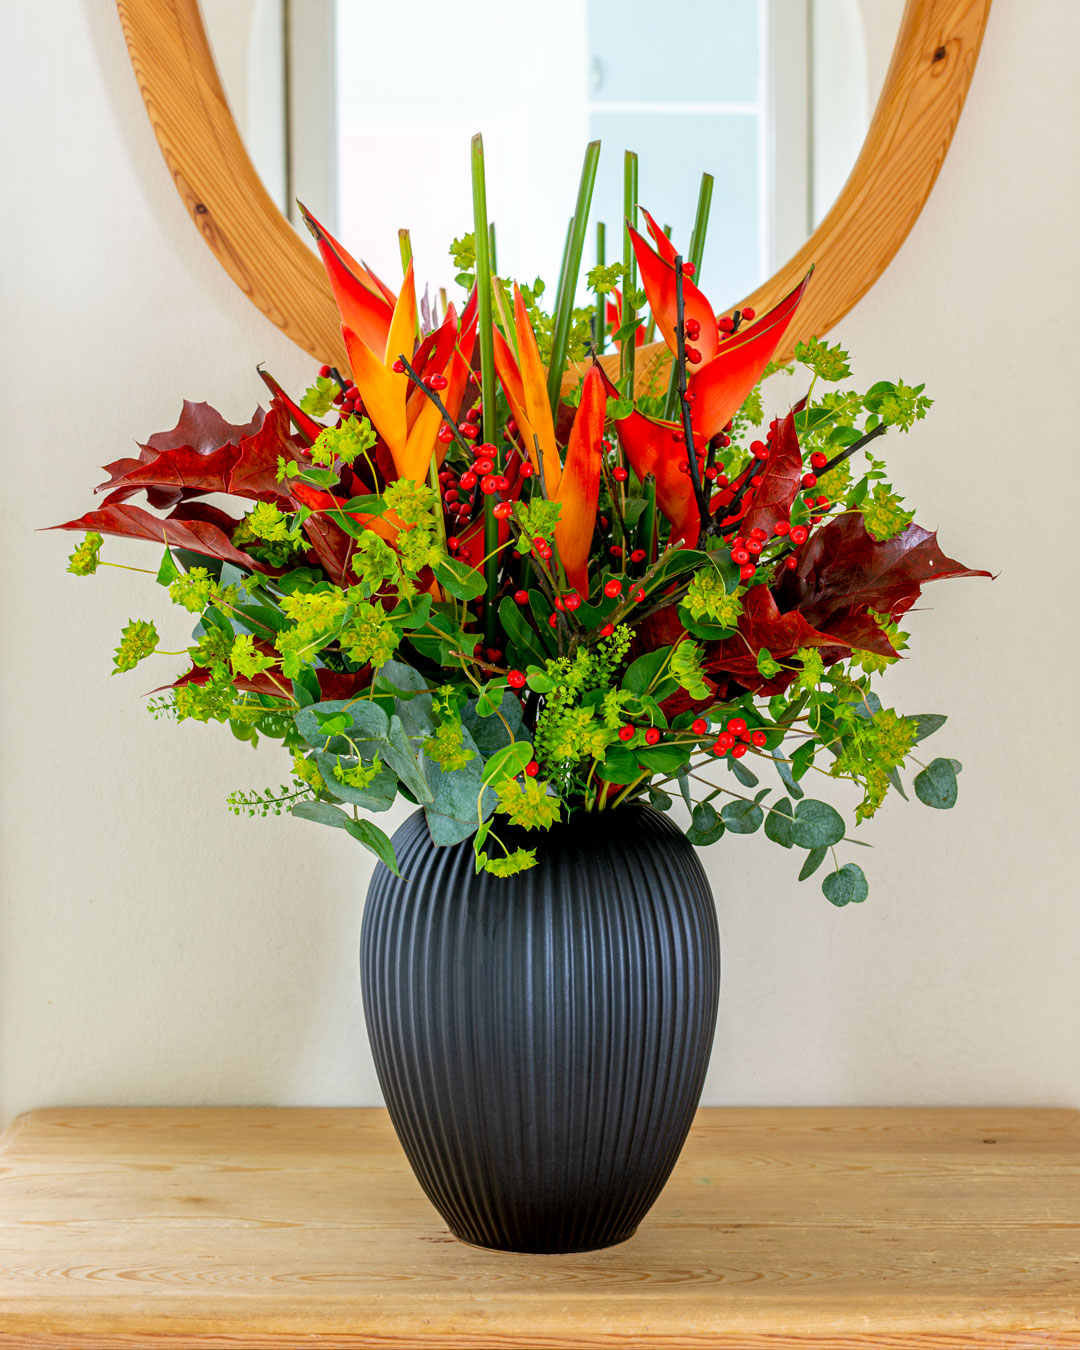 Sort vase med blomster foran spejl i entre fra Michael Andersen Keramik Model 4767